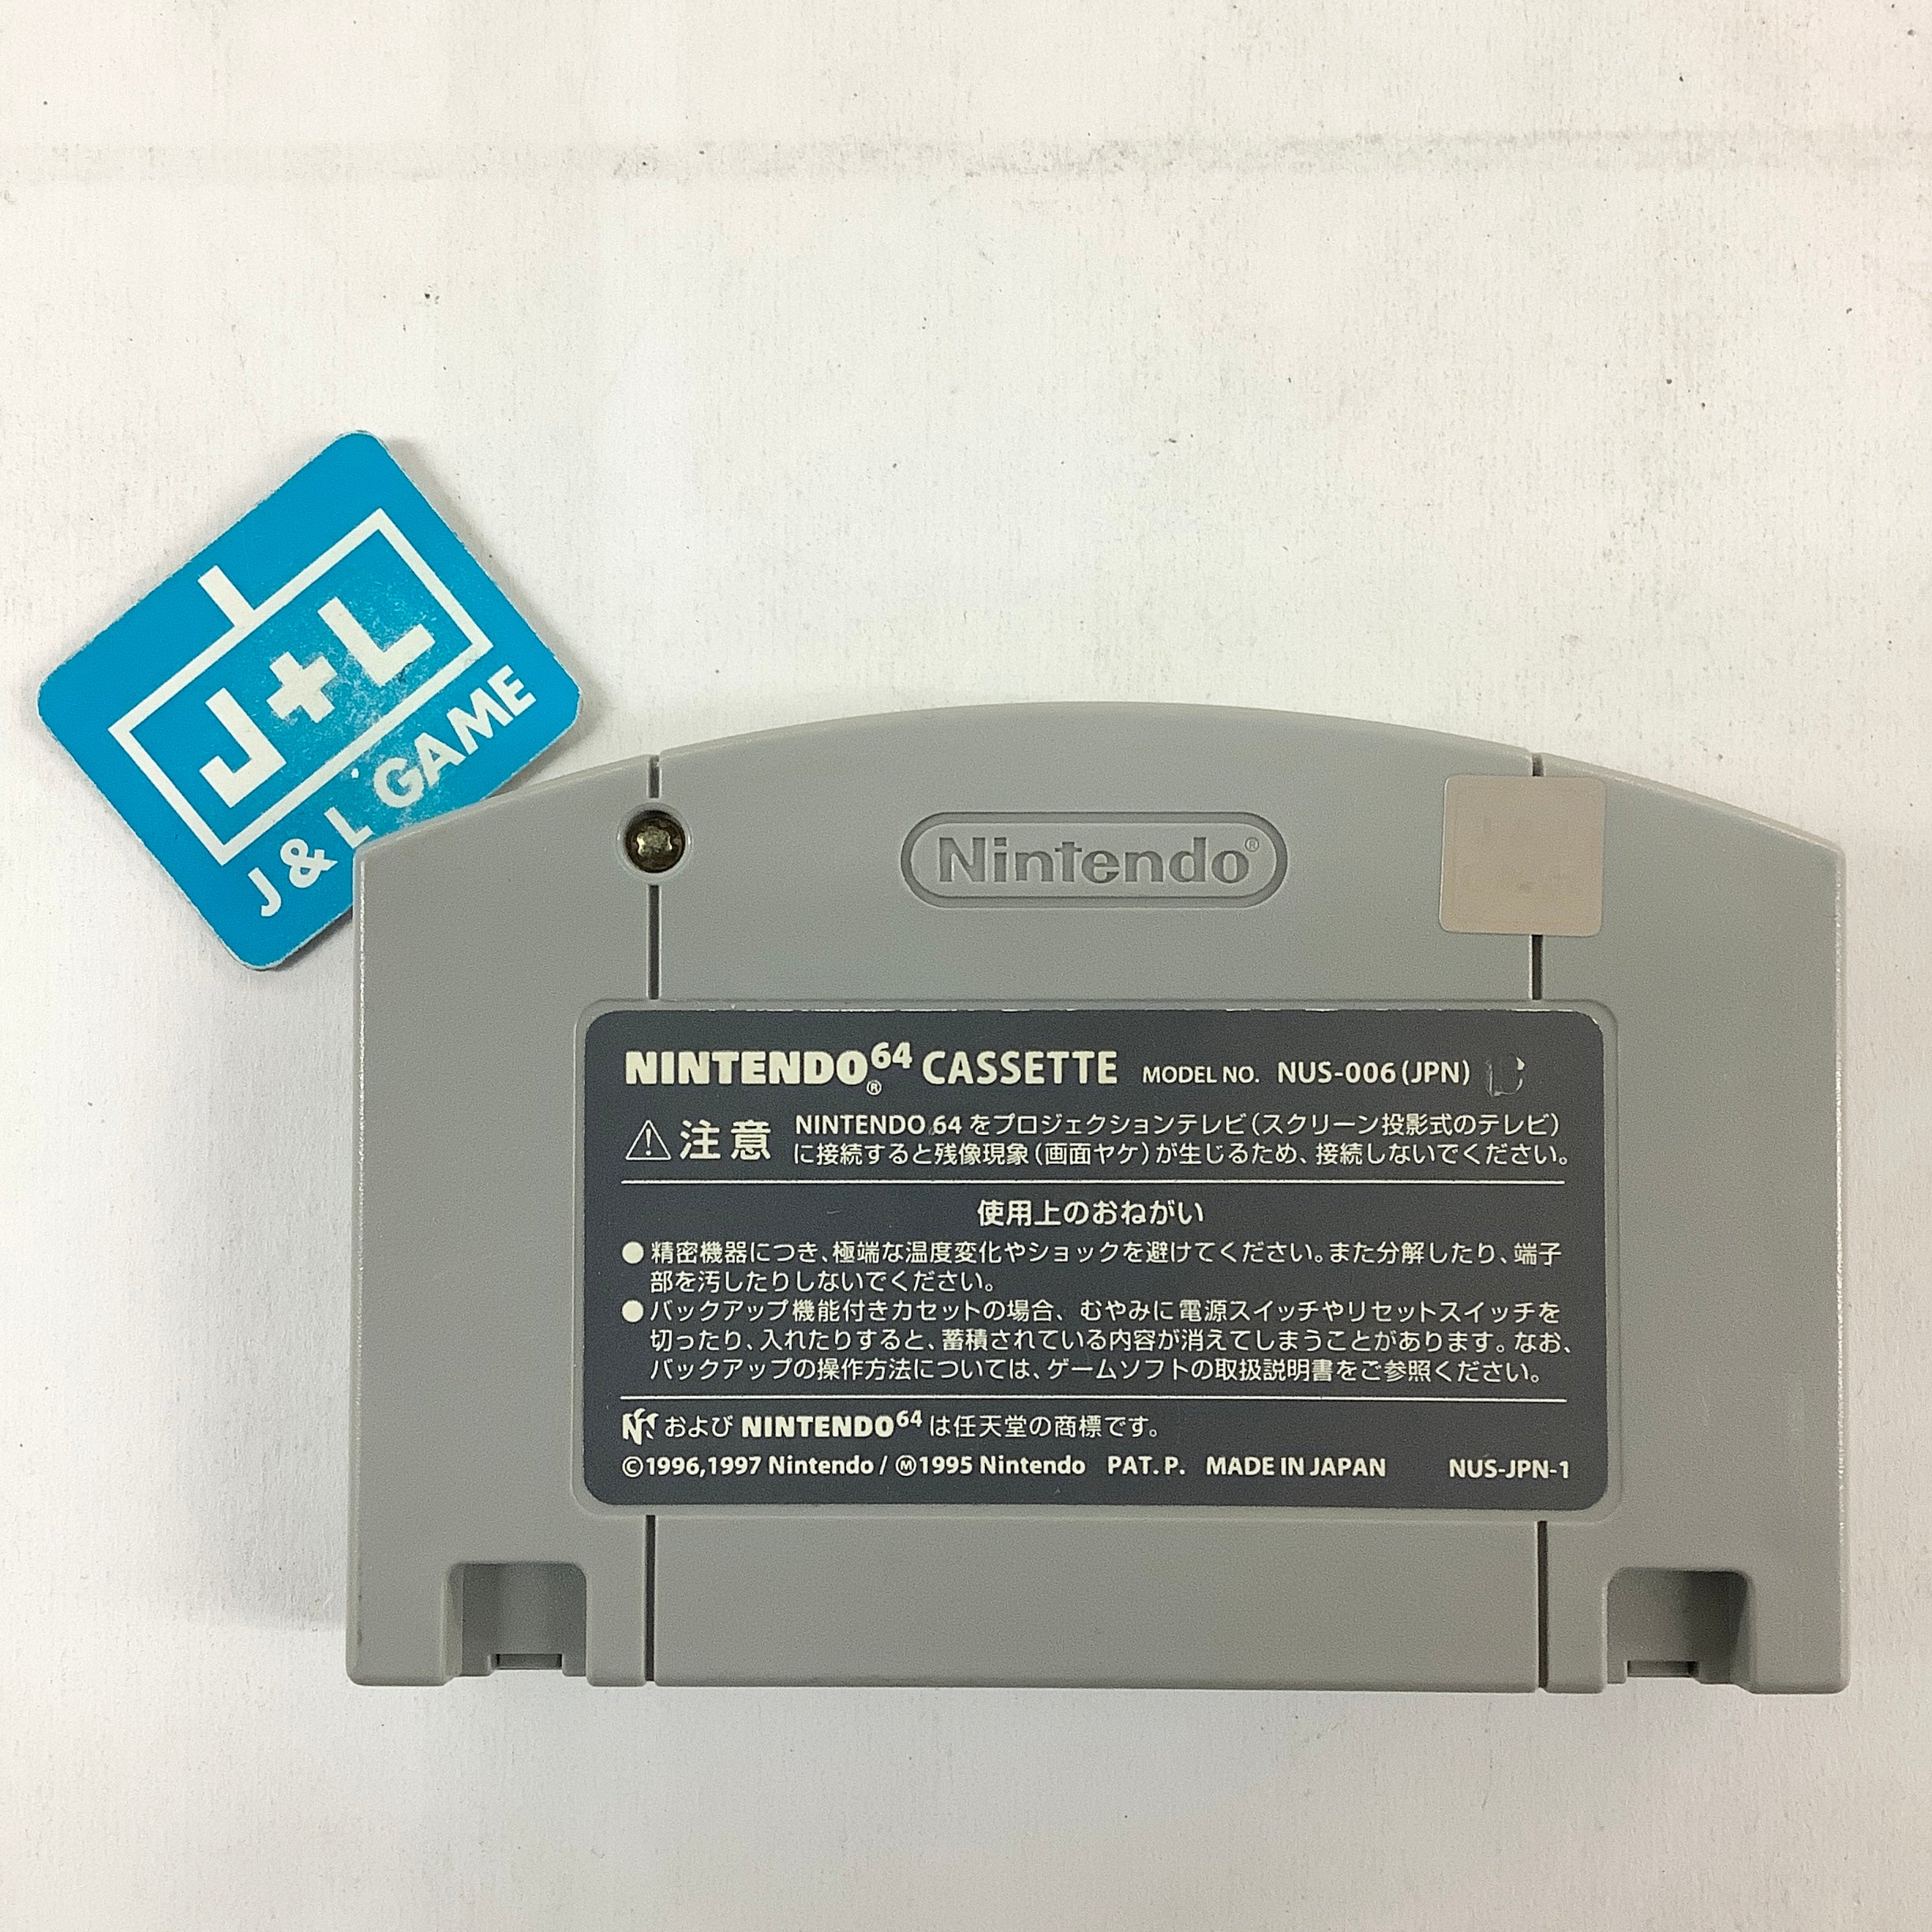 GoldenEye 007 - (N64) Nintendo 64 [Pre-Owned] (Japanese Import) Video Games Nintendo   